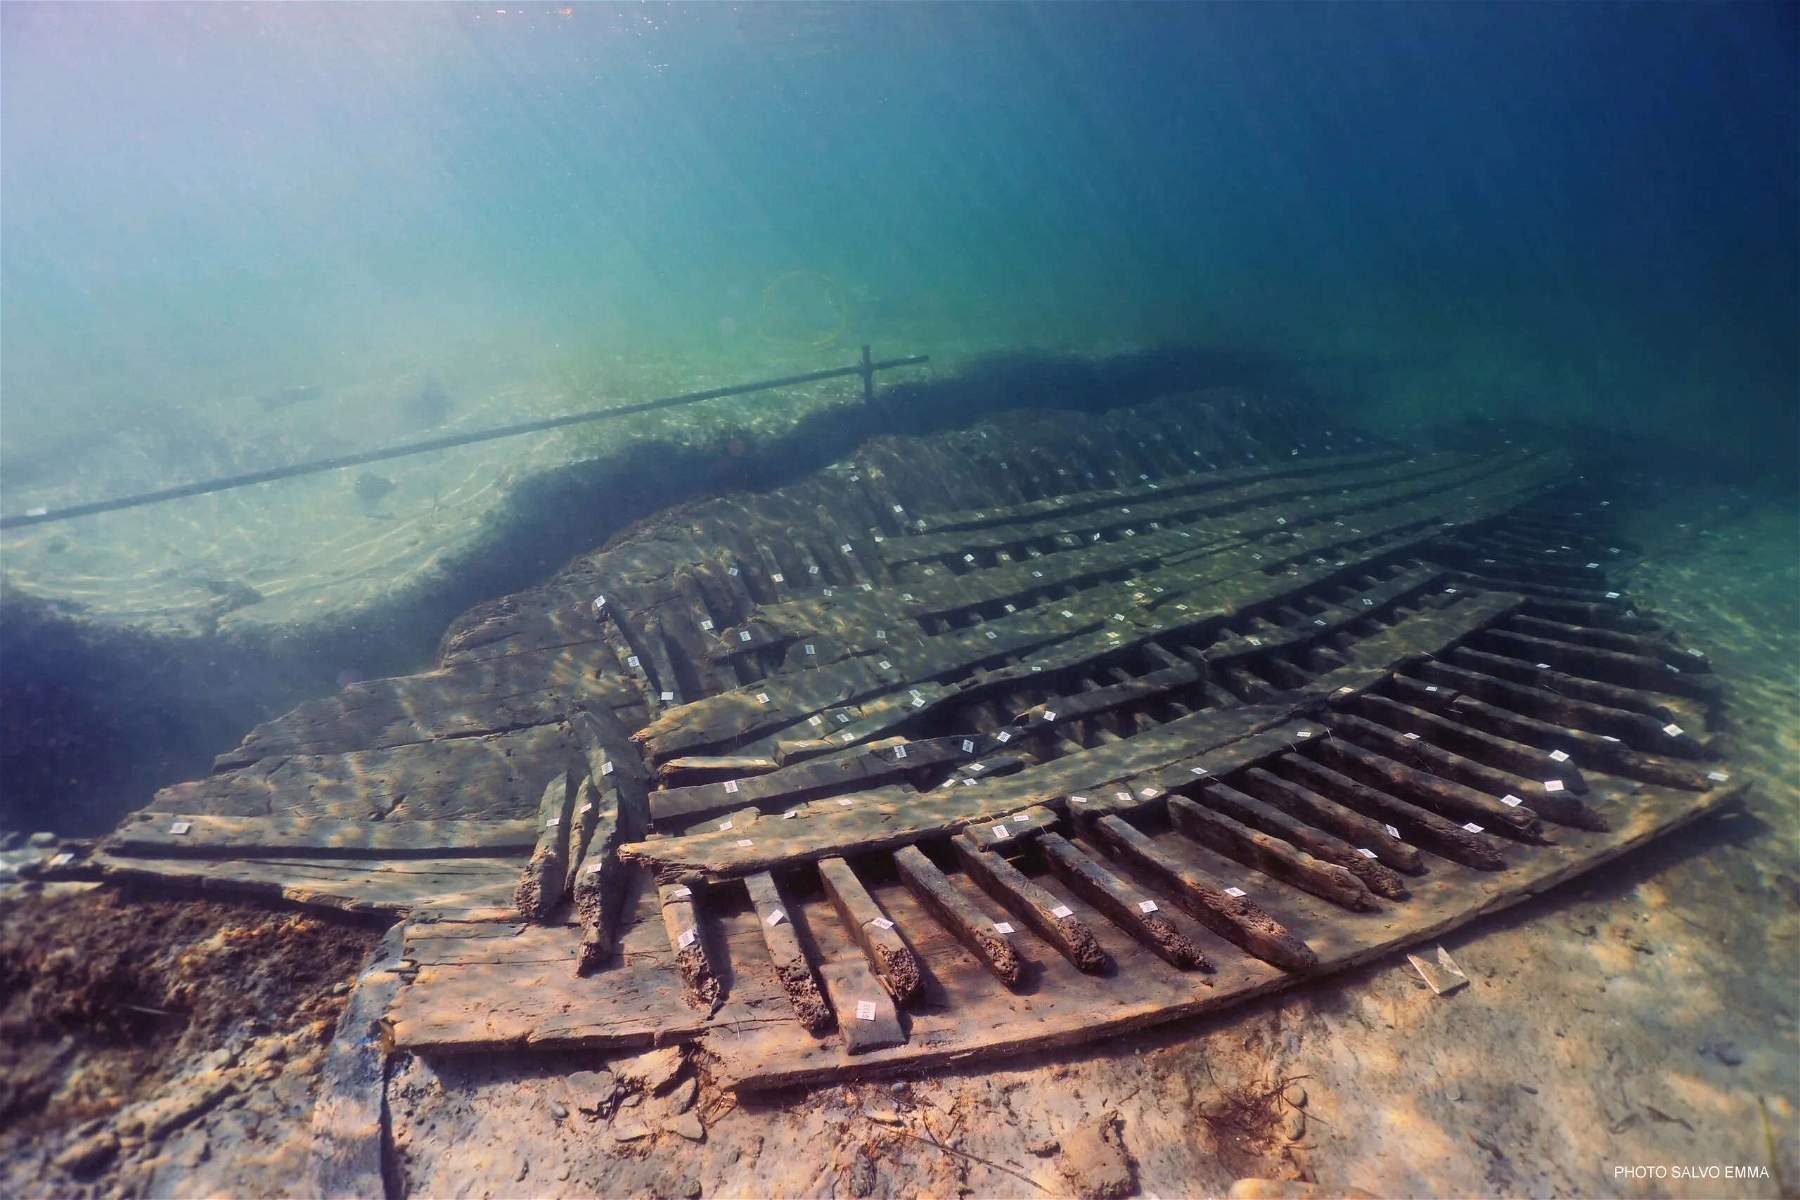 Sicilia, completato il recupero del relitto della nave romana Marausa 2. Sarà restaurato